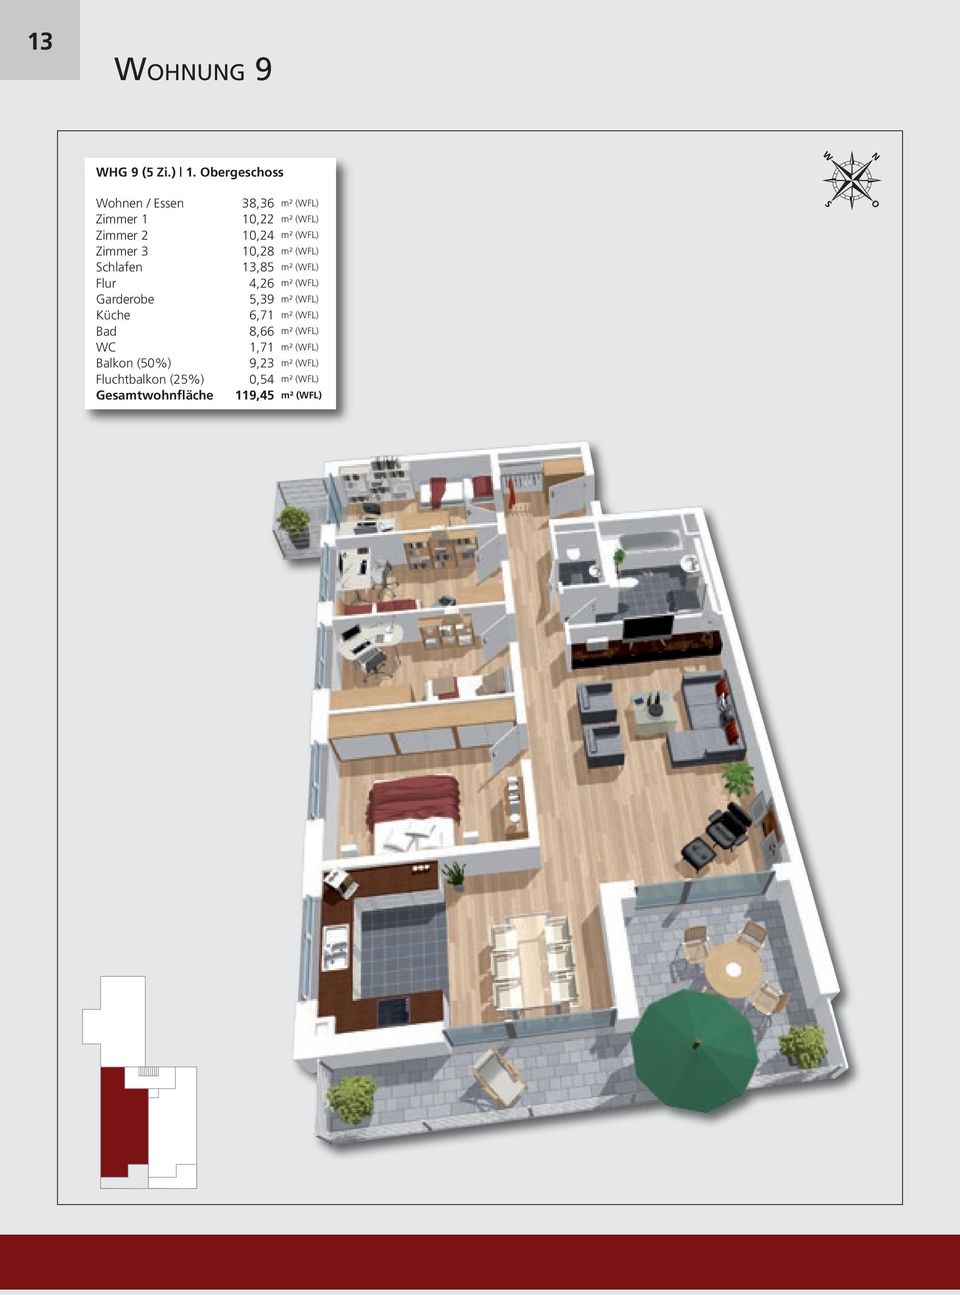 Fluchtbalkon (25%) Gesamtwohnfläche 38,36 m² (WFL) 10,22 m² (WFL) 10,24 m² (WFL)